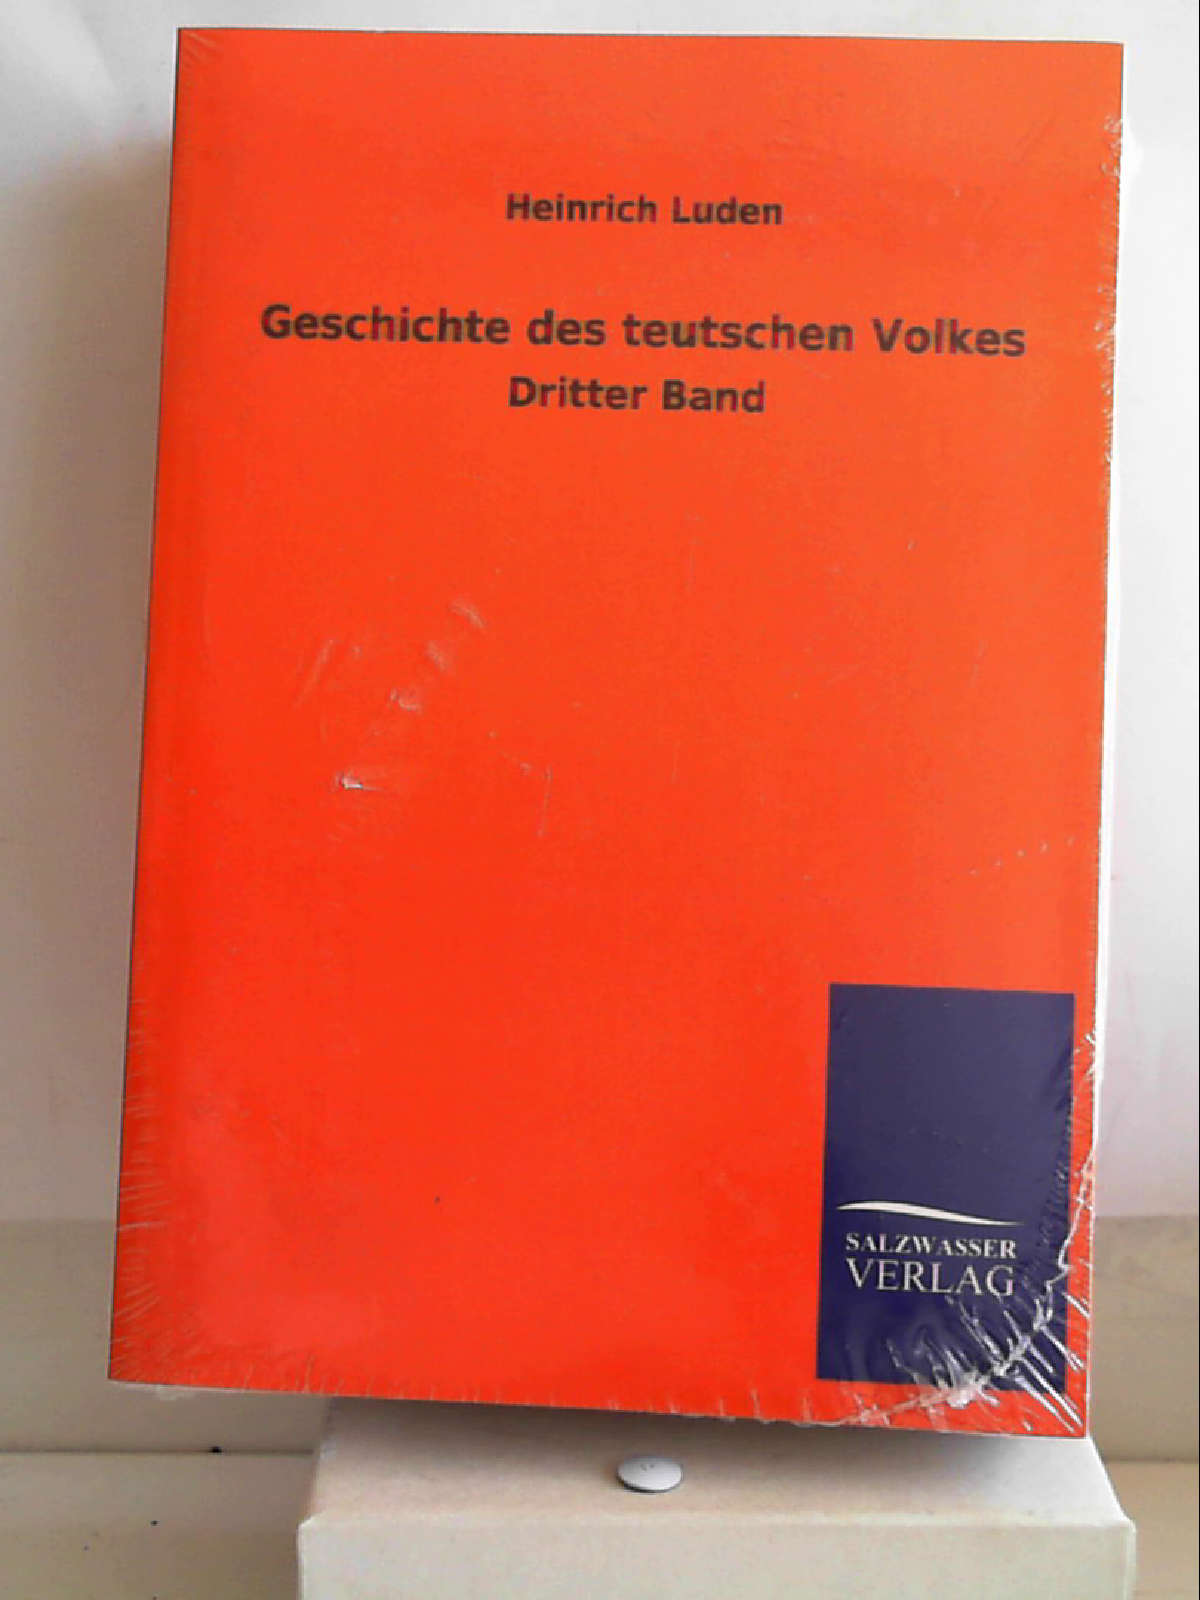 Geschichte des teutschen Volkes: Dritter Band [Paperback] [May 15, 2013] Luden, Heinrich - Heinrich Luden